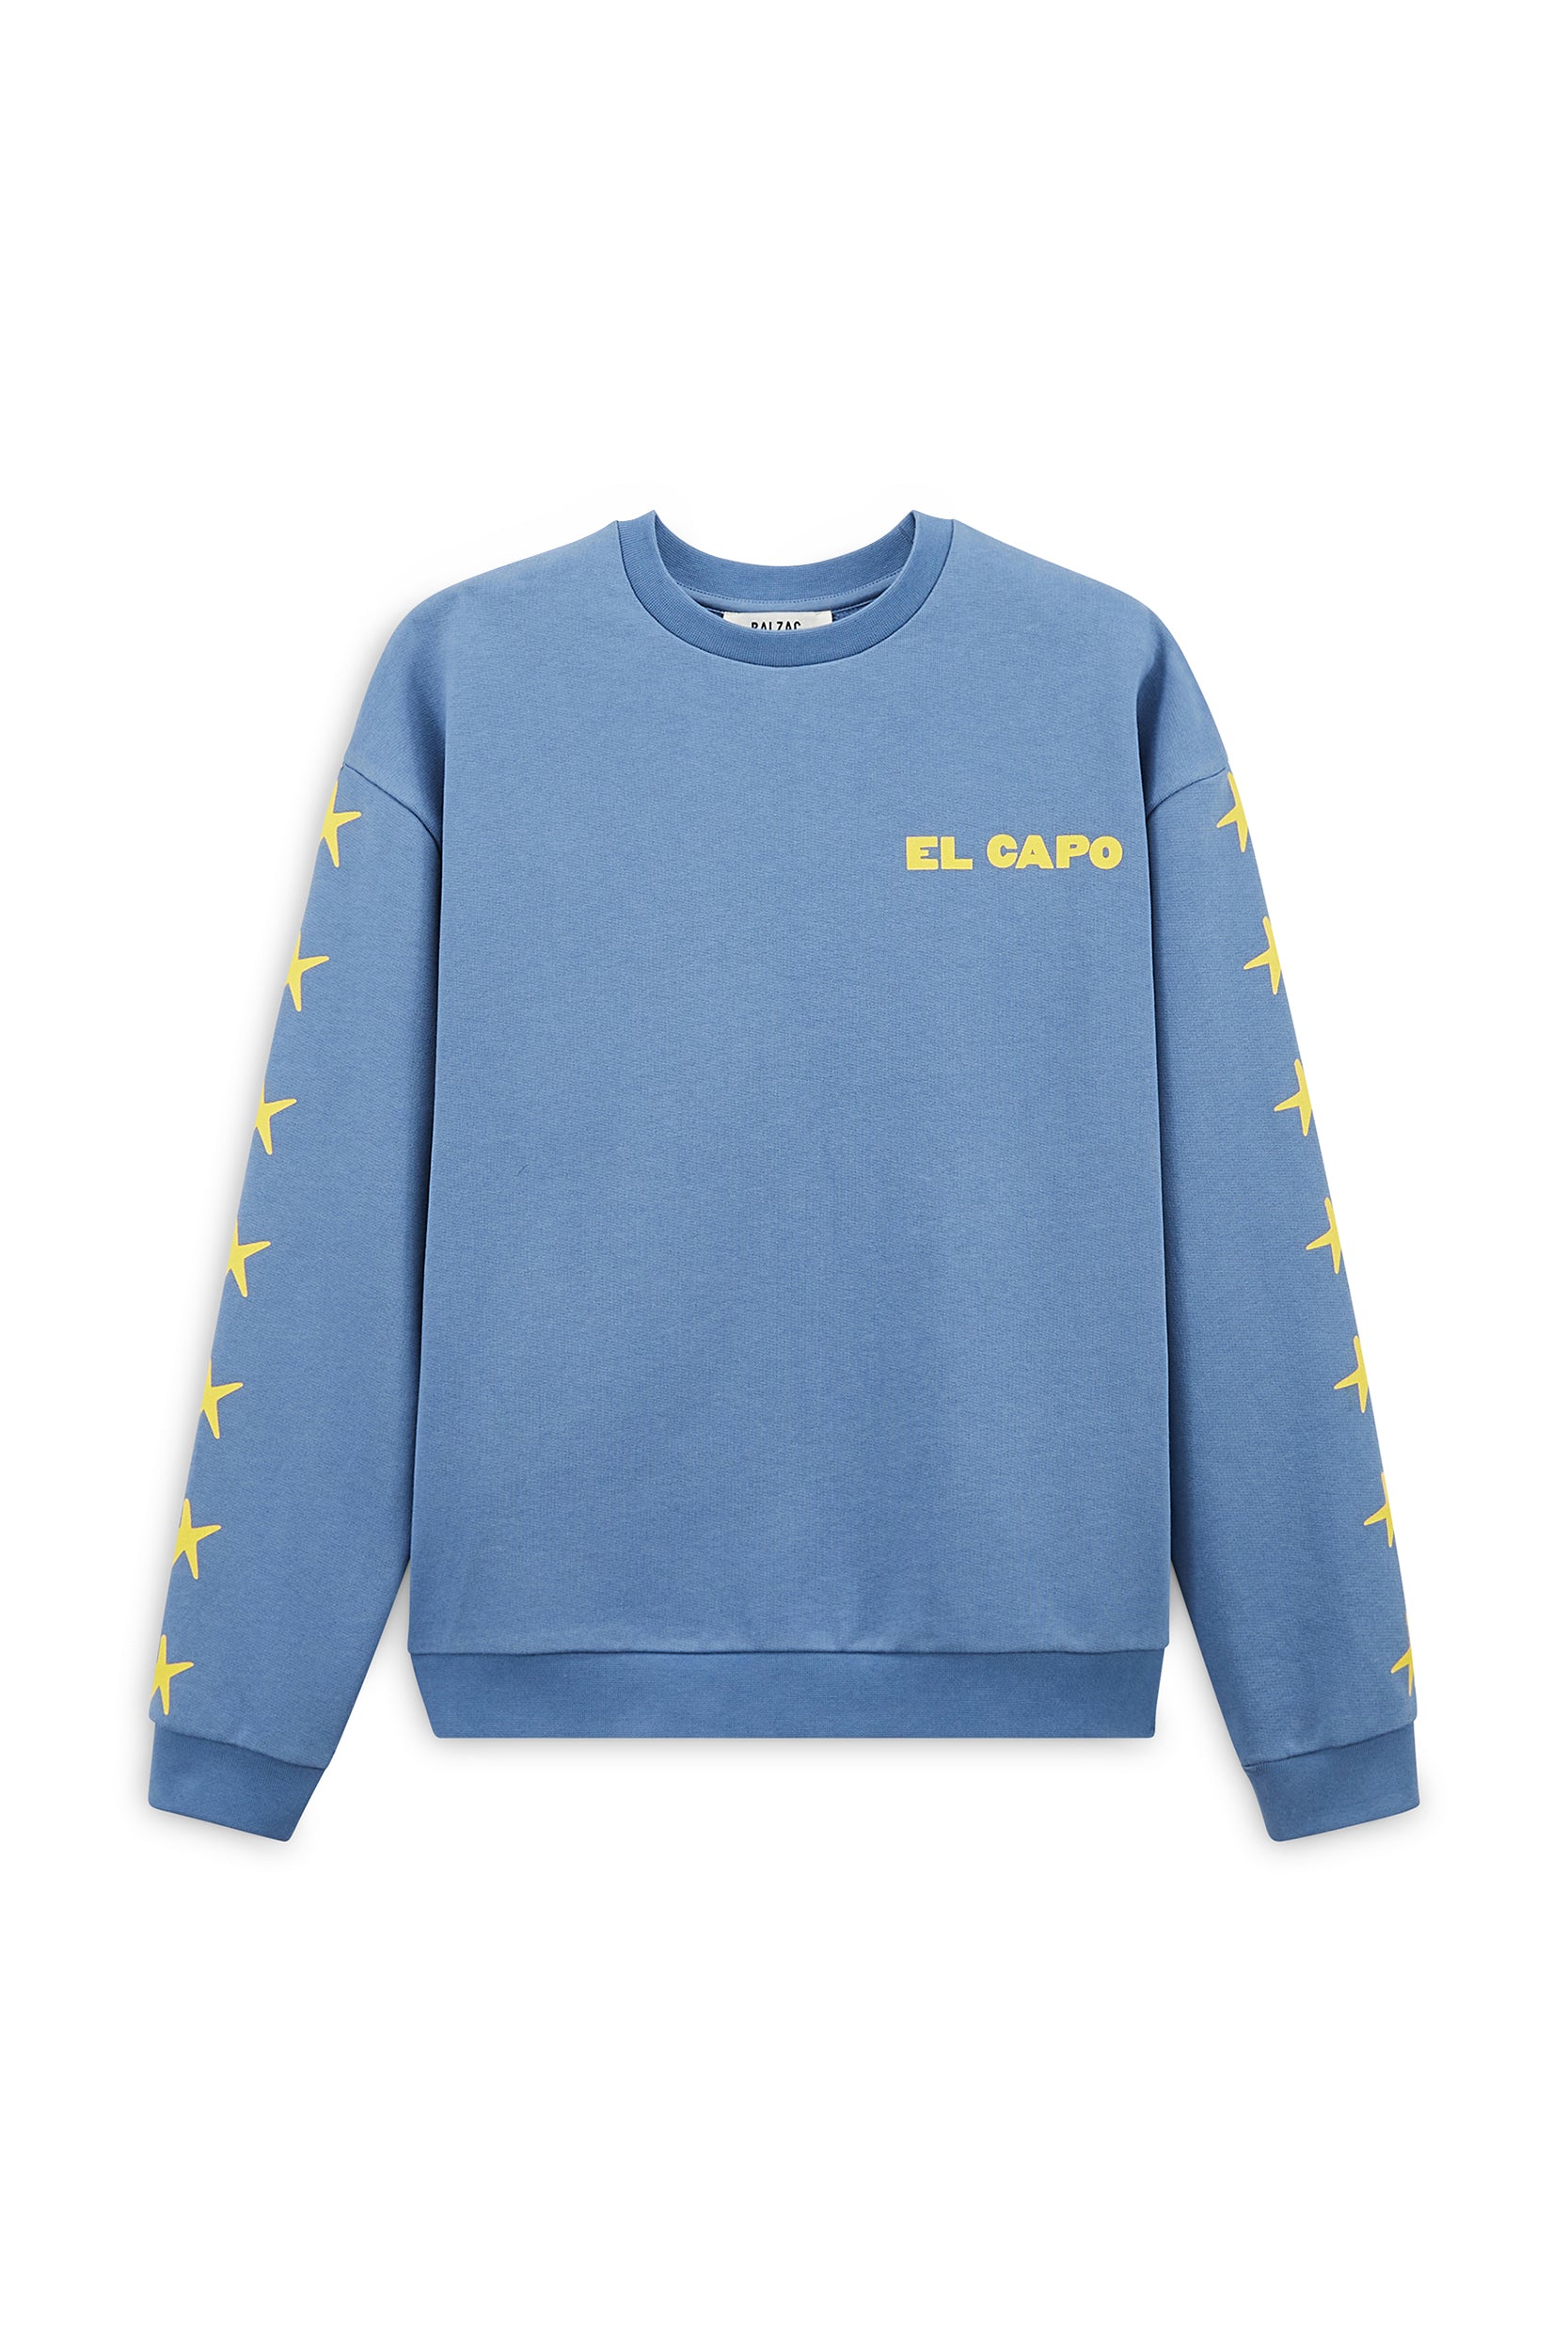 Harlow El Capo blue sweatshirt